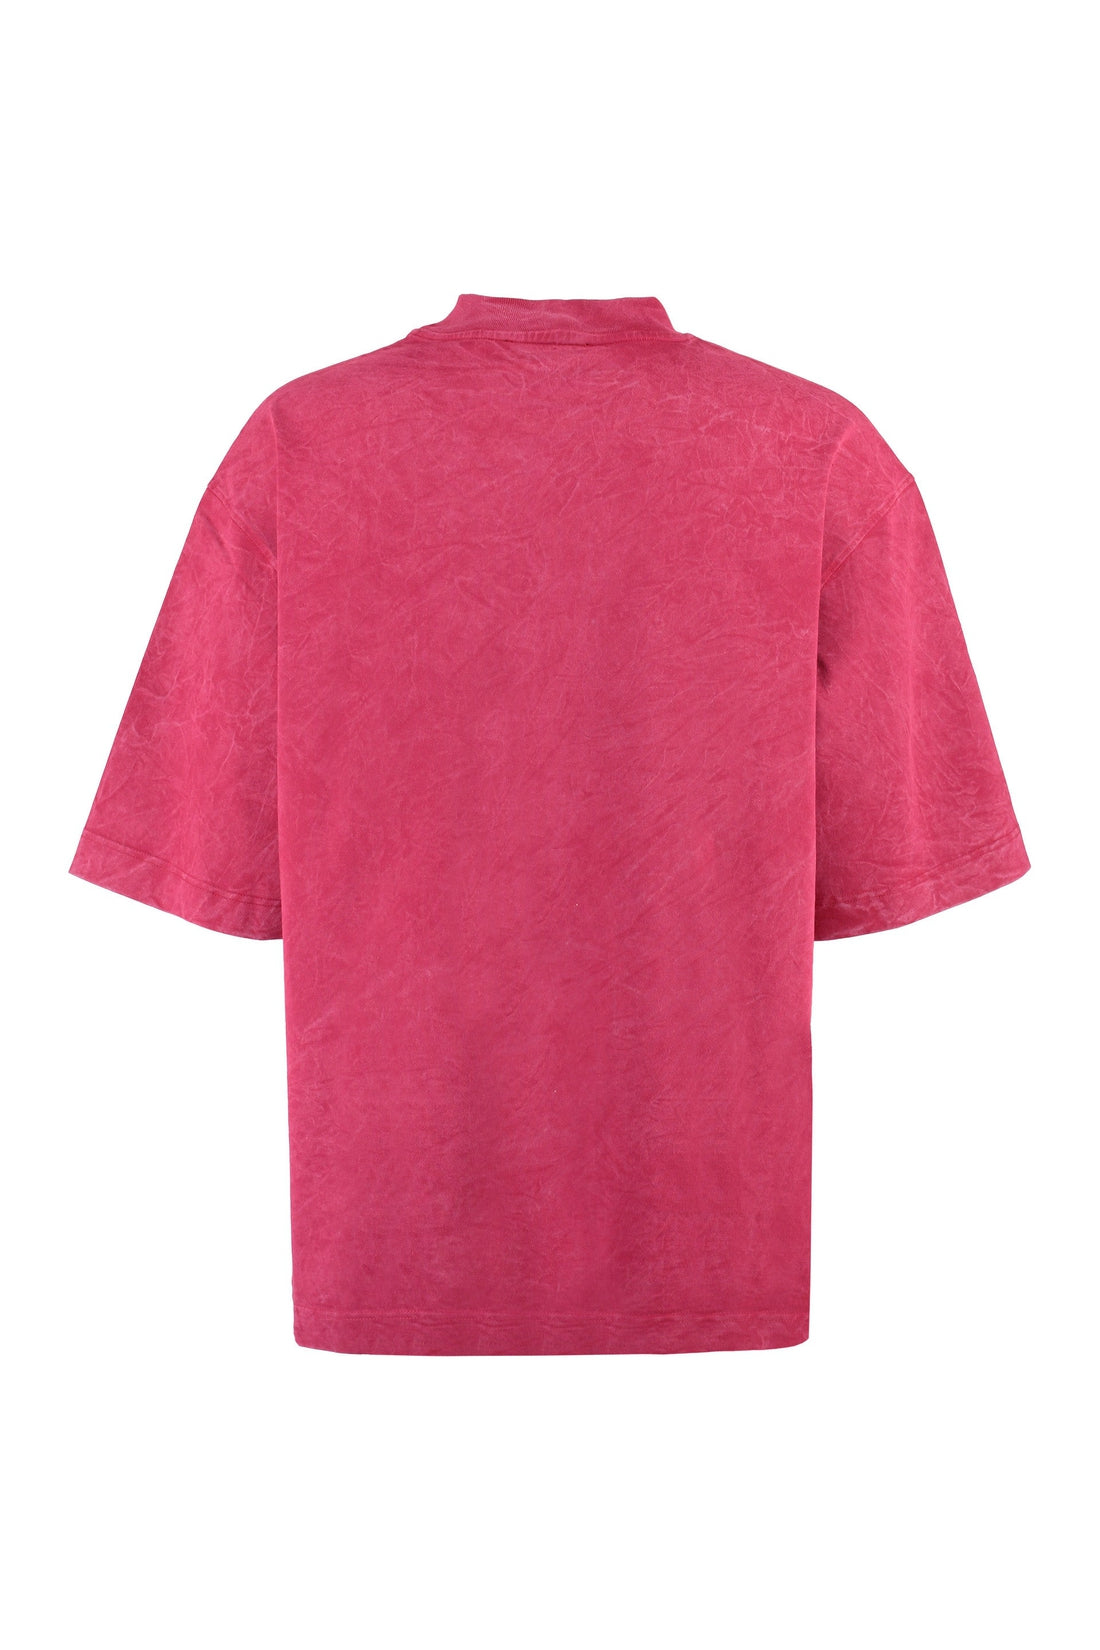 Piralo-OUTLET-SALE-Oversize cotton t-shirt-ARCHIVIST